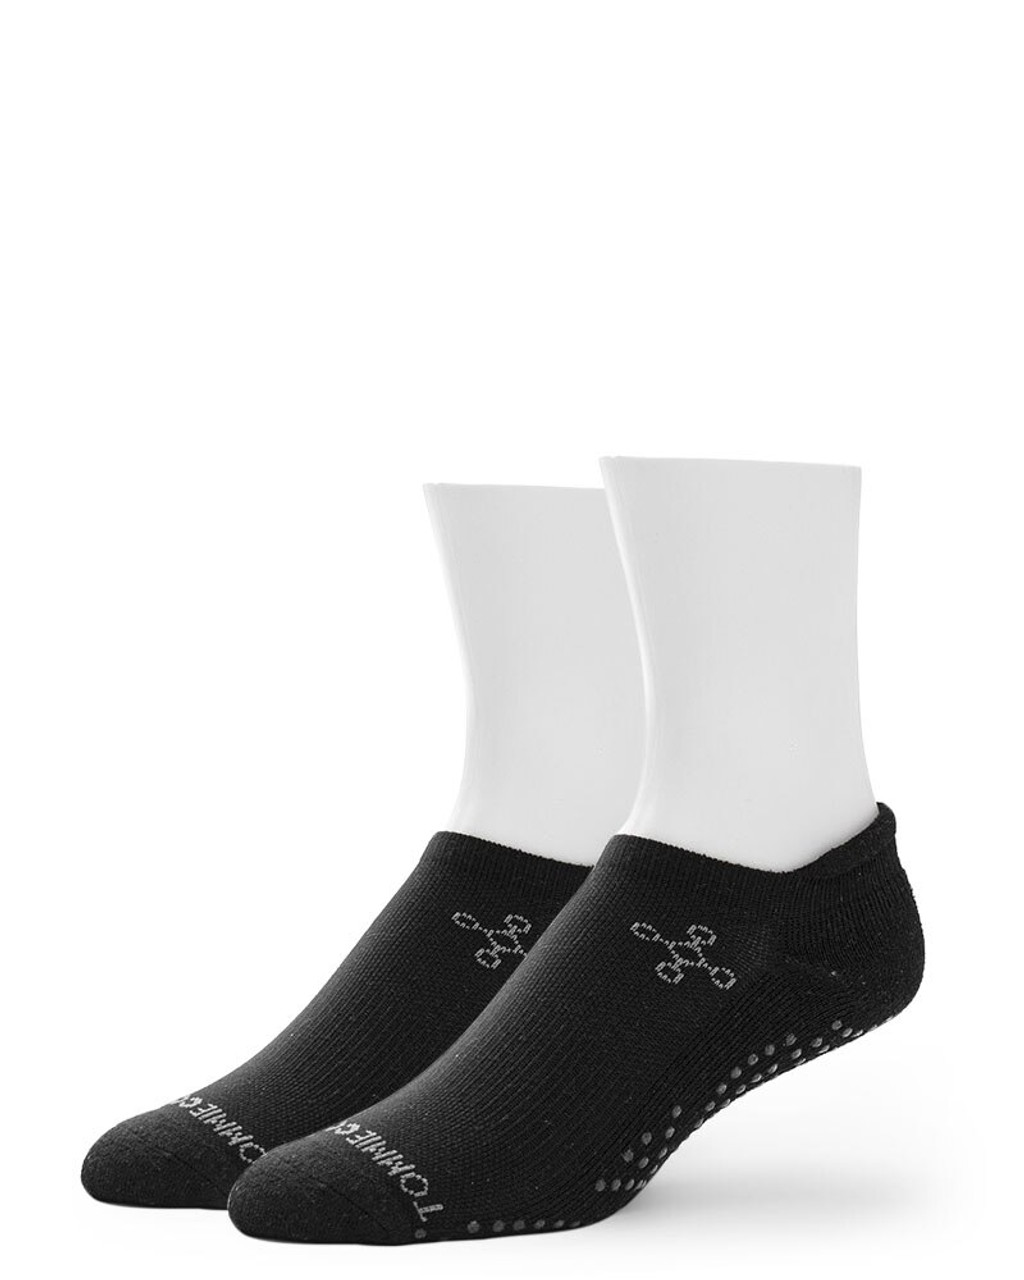 white gripper socks